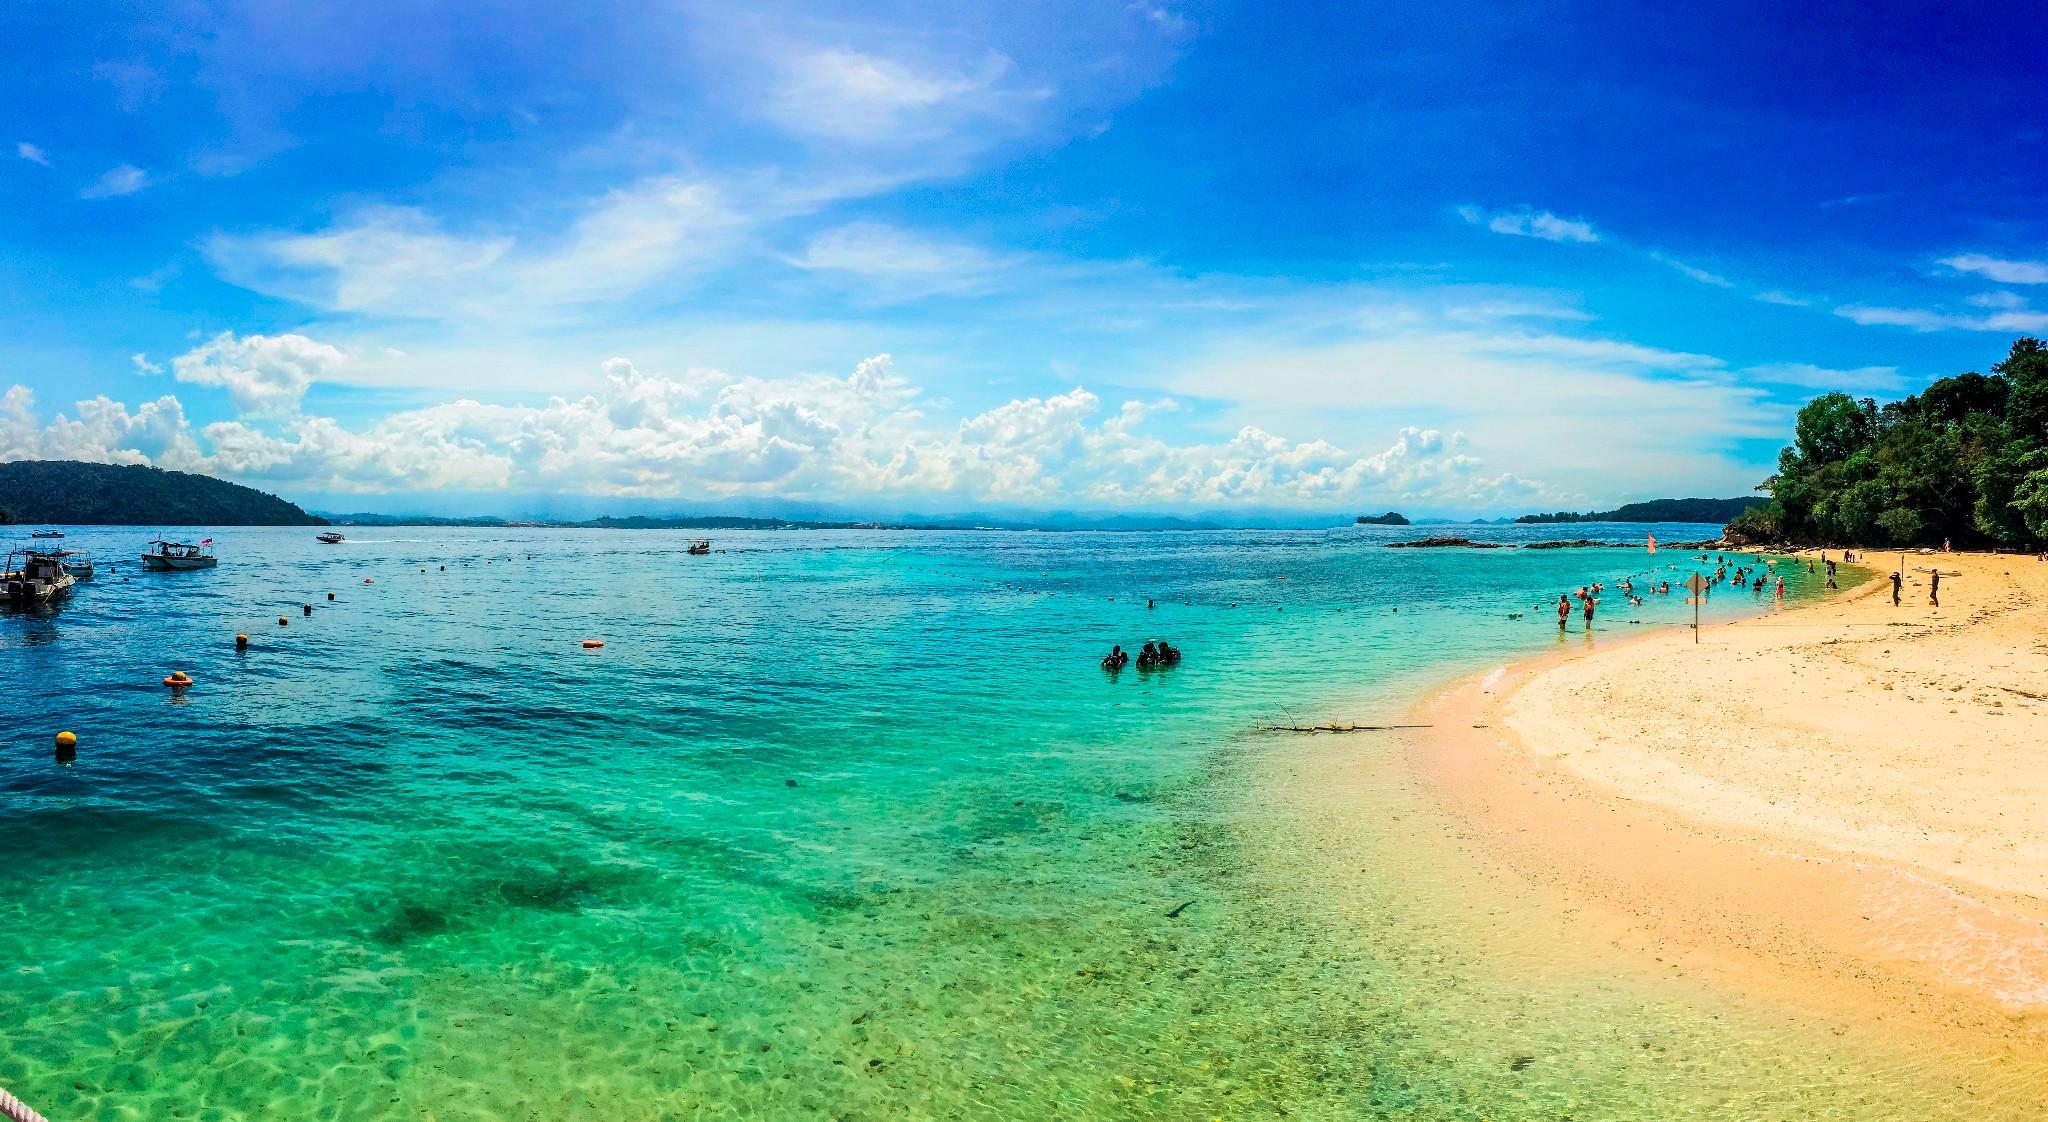 马来西亚沙巴美人鱼岛度假村浮潜攻略 | 丝绸@曼塔那尼